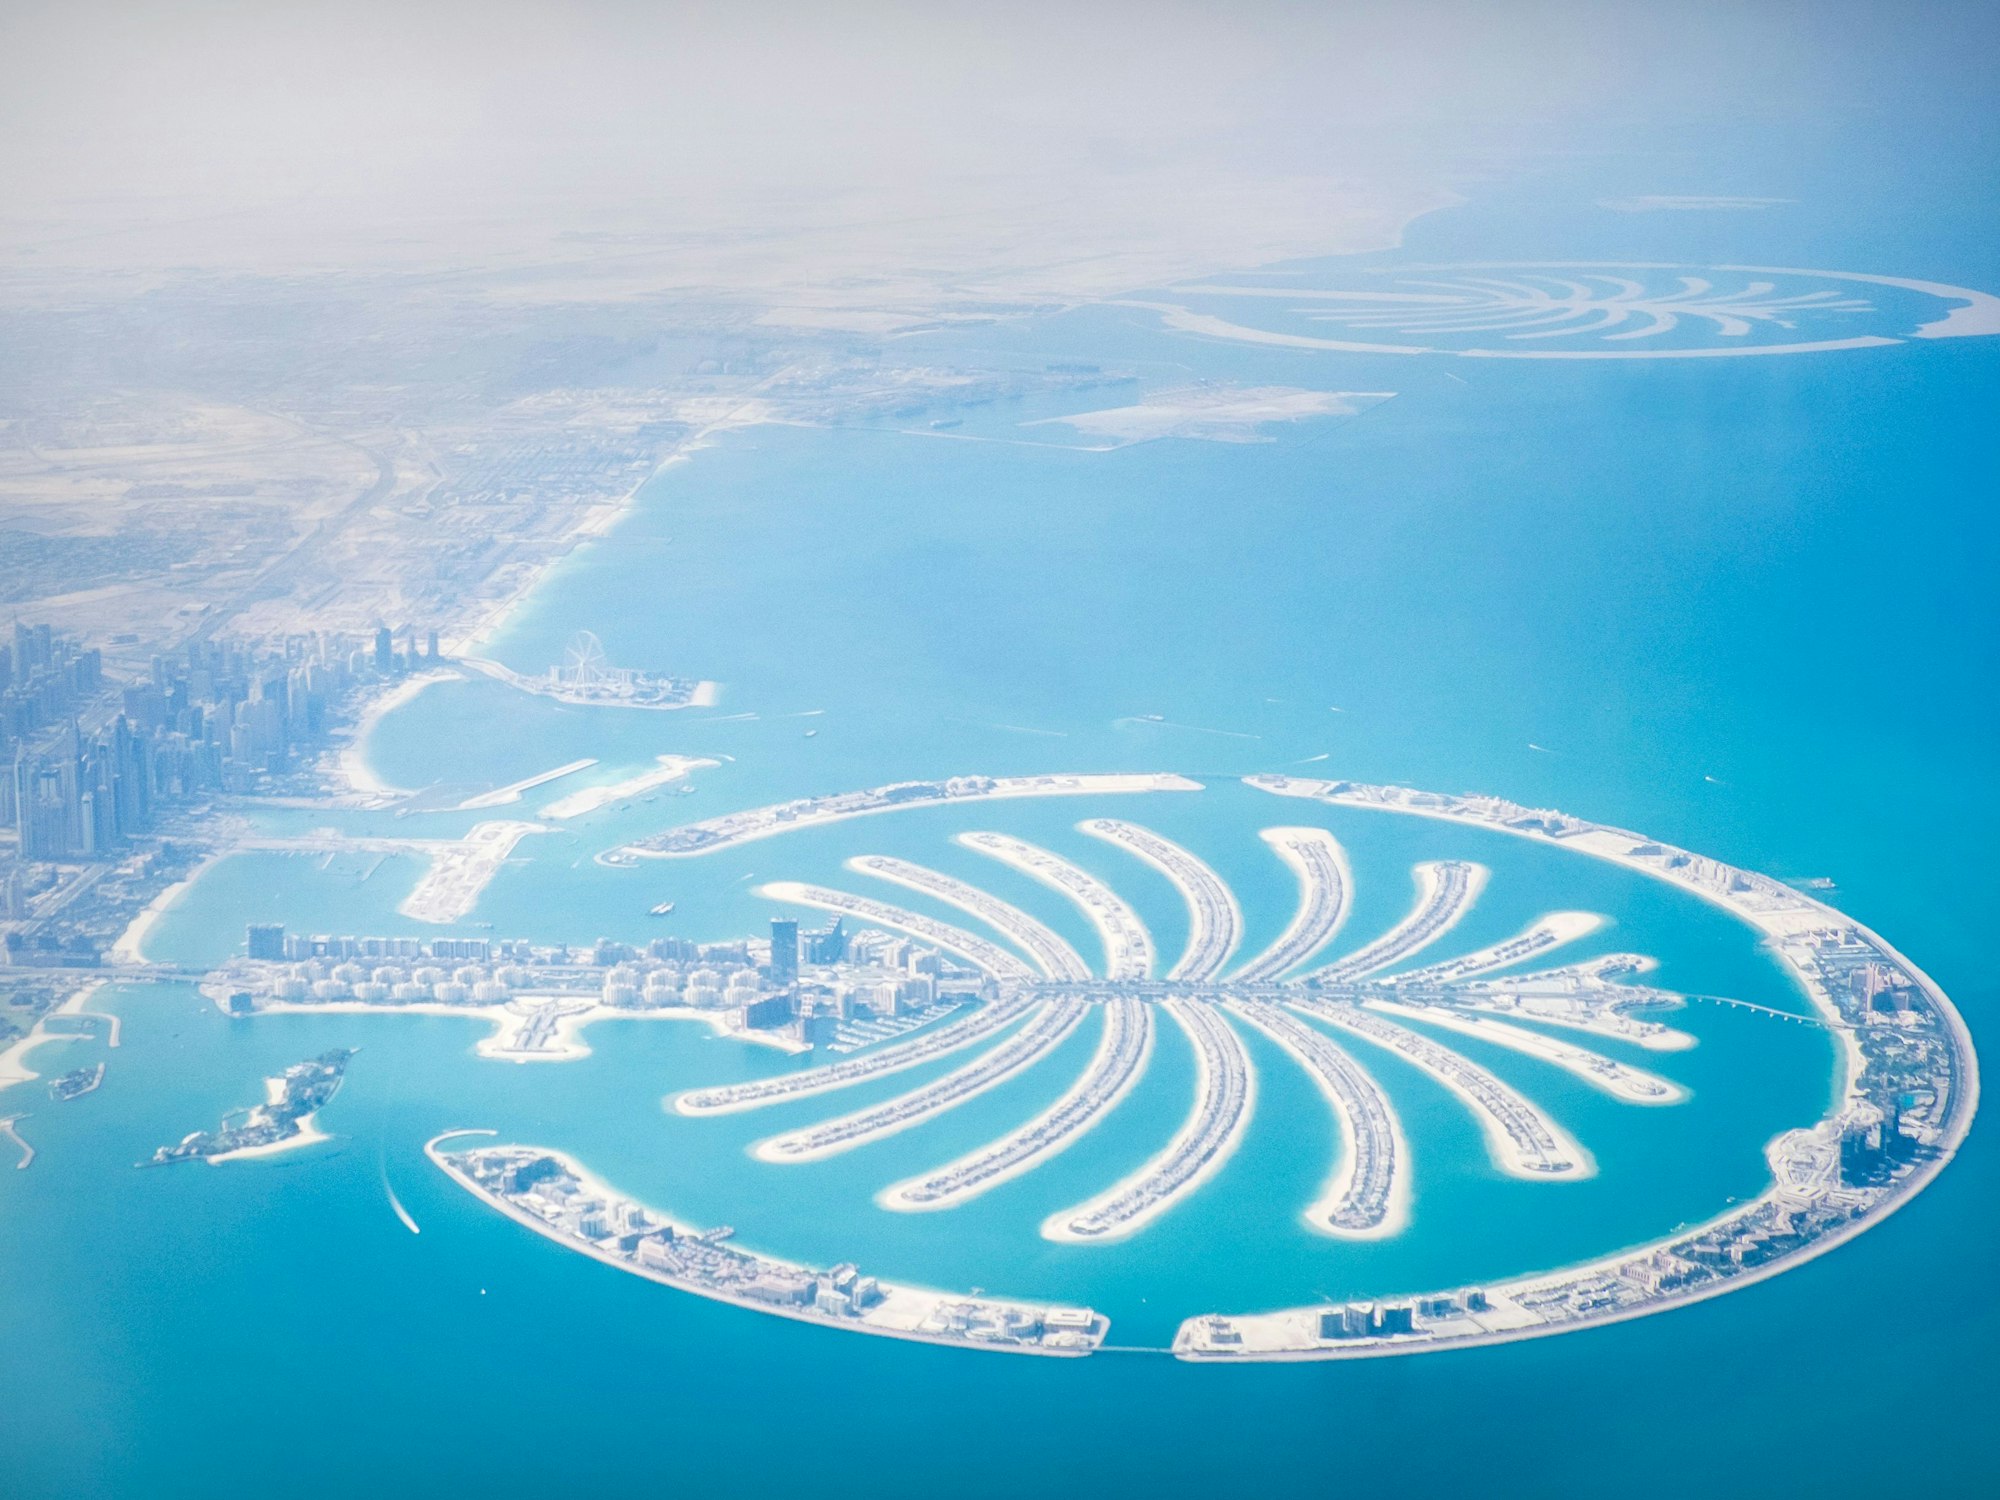 Die Palmeninsel Jumeirah vor der Küste Dubais auf einer undatierten Aufnahme.